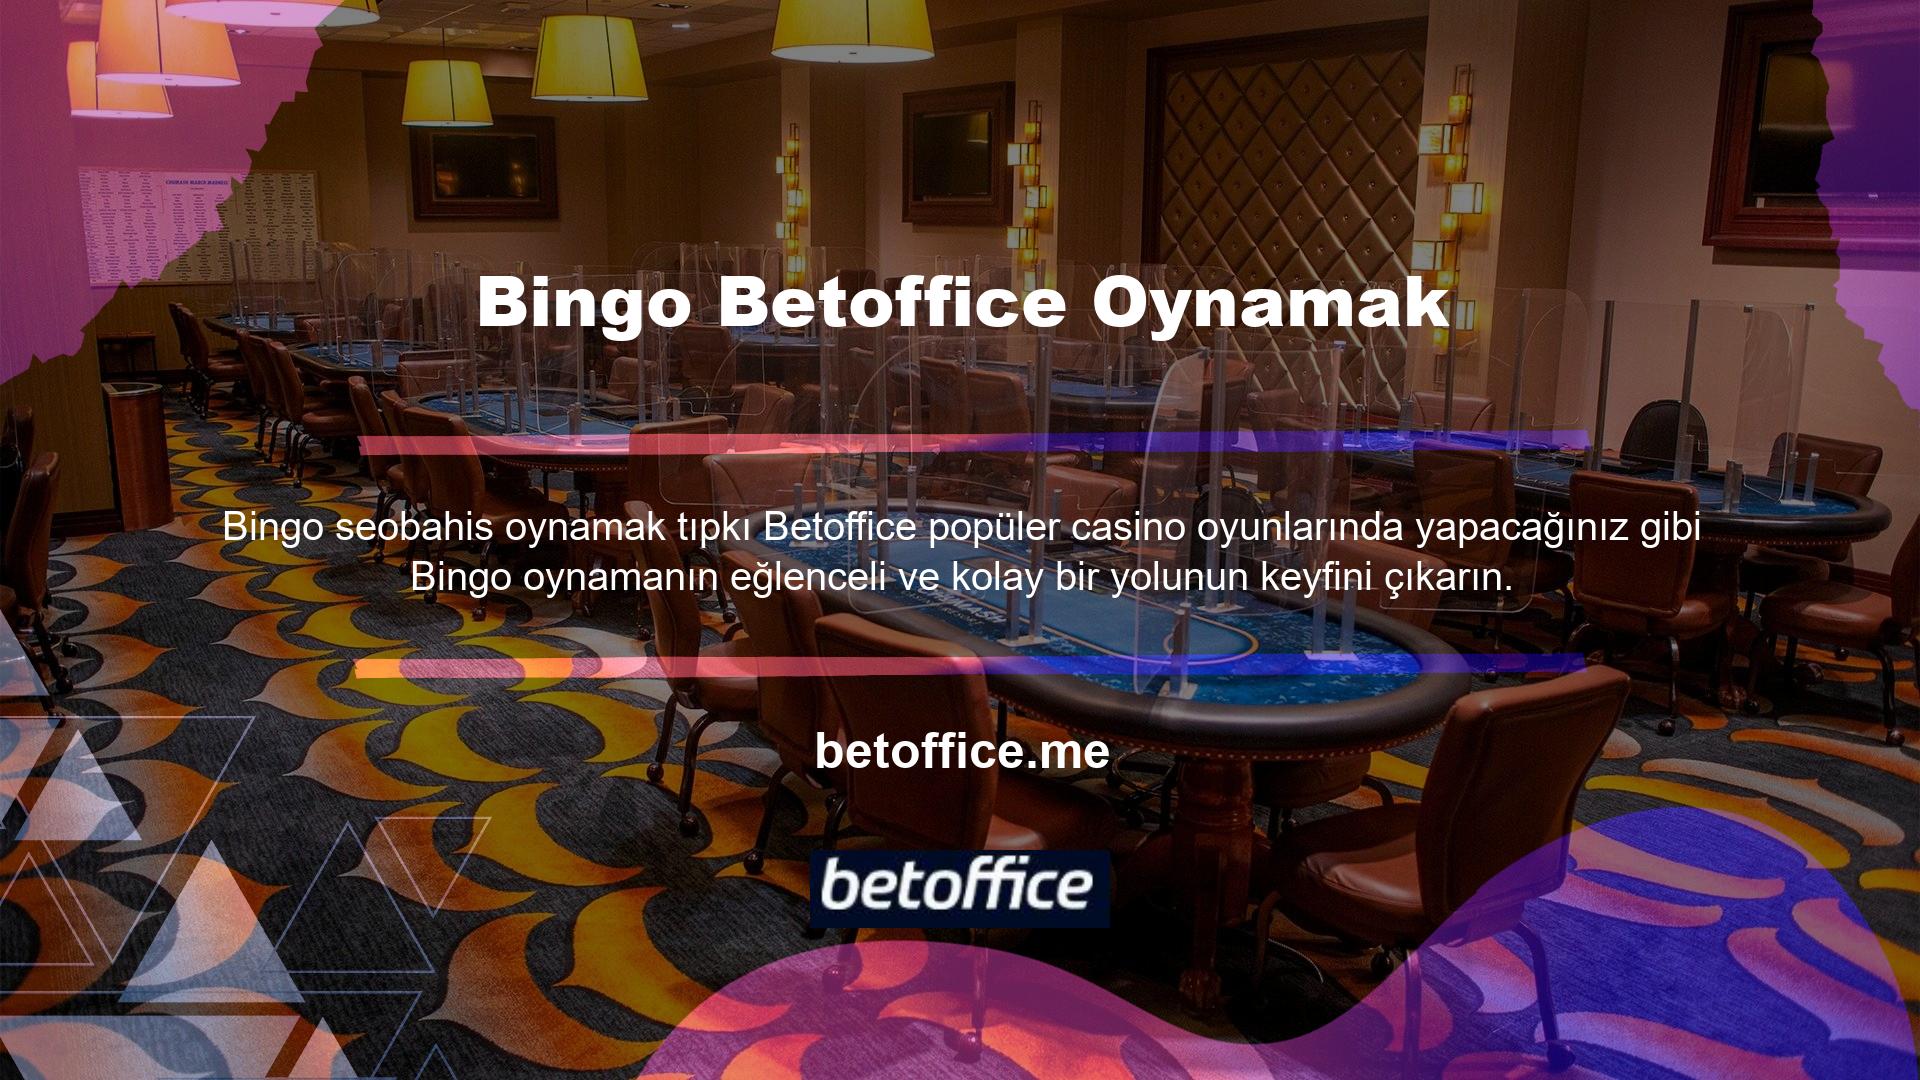 Betoffice güncel sayfasını kontrol ettikten sonra mevcut seçenekler arasından bir oyun seçerek bingo oynamaya başlayabilirsiniz